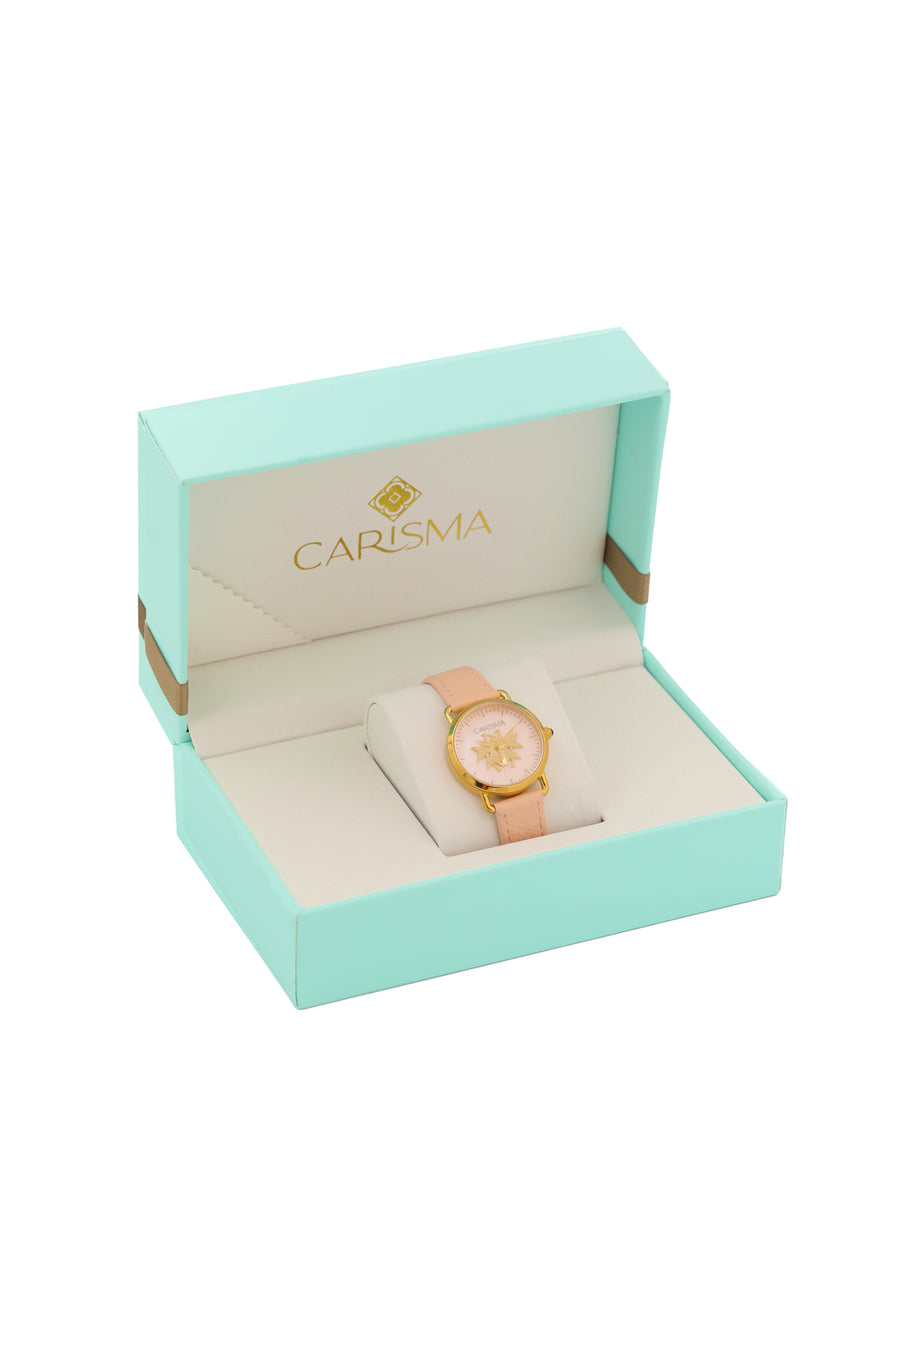 The Carisma Pink Reġina Watch